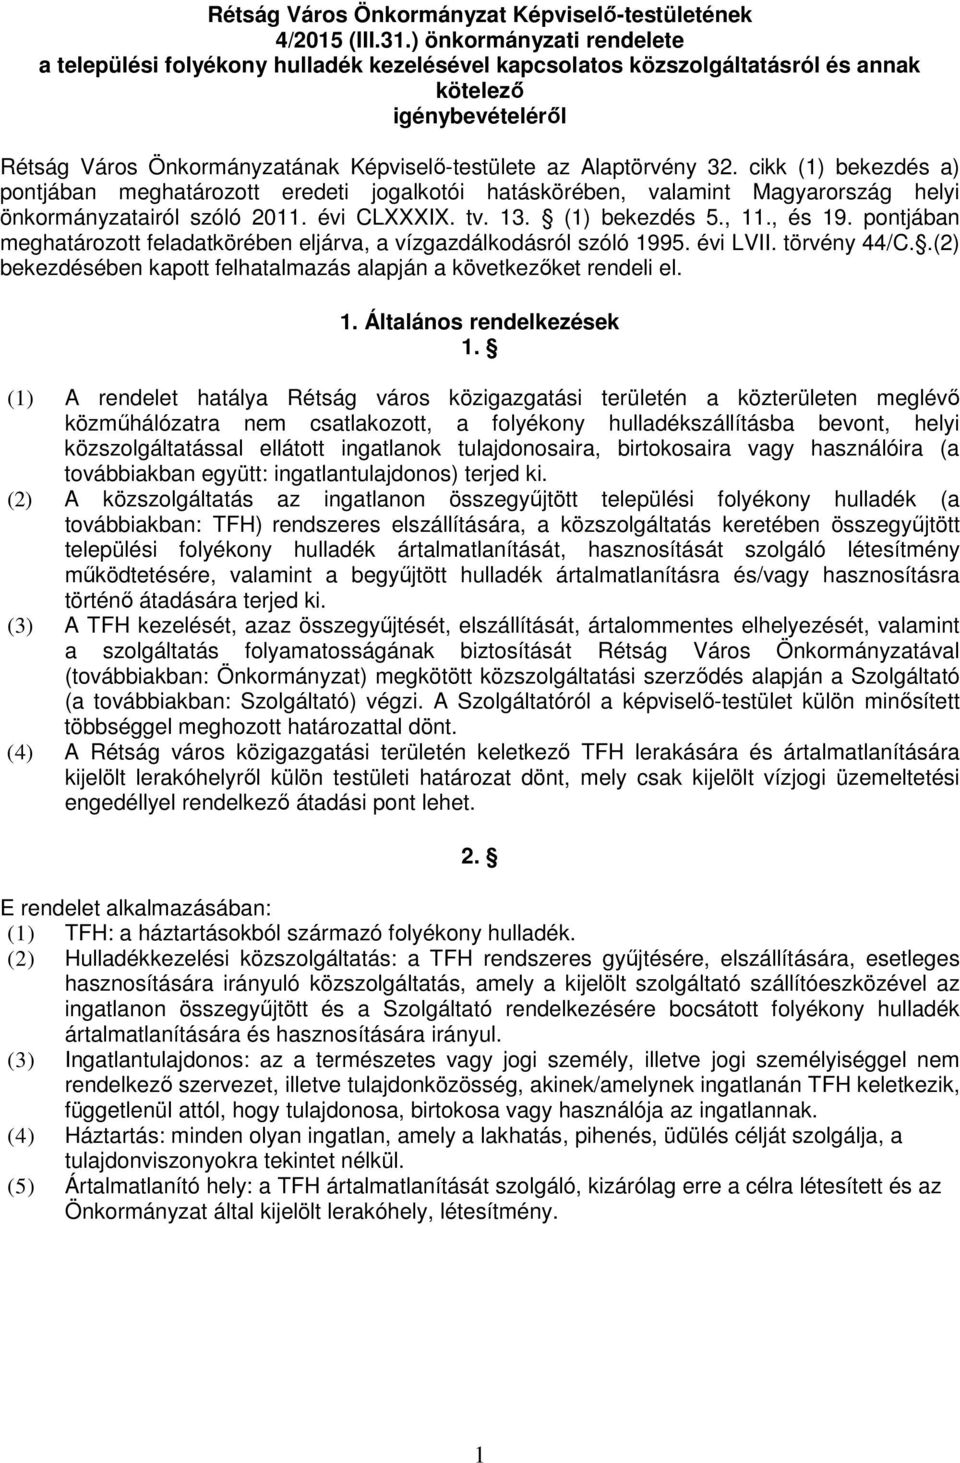 Alaptörvény 32. cikk (1) bekezdés a) pontjában meghatározott eredeti jogalkotói hatáskörében, valamint Magyarország helyi önkormányzatairól szóló 2011. évi CLXXXIX. tv. 13. (1) bekezdés 5., 11.